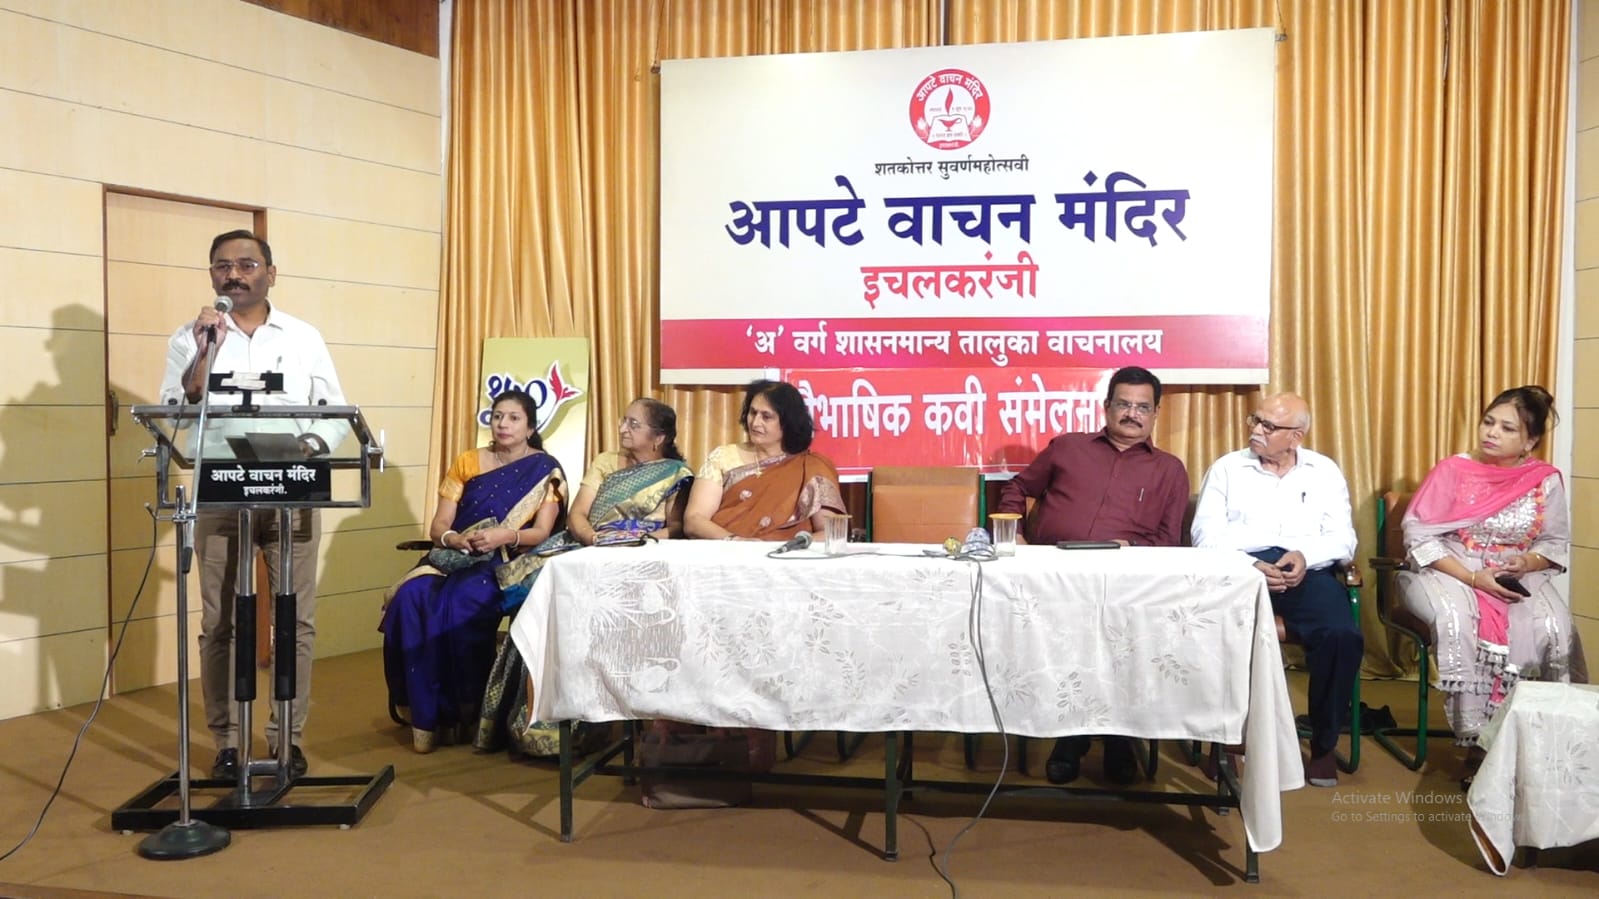 Triveni Sangam Kavi Sammel of Hindi